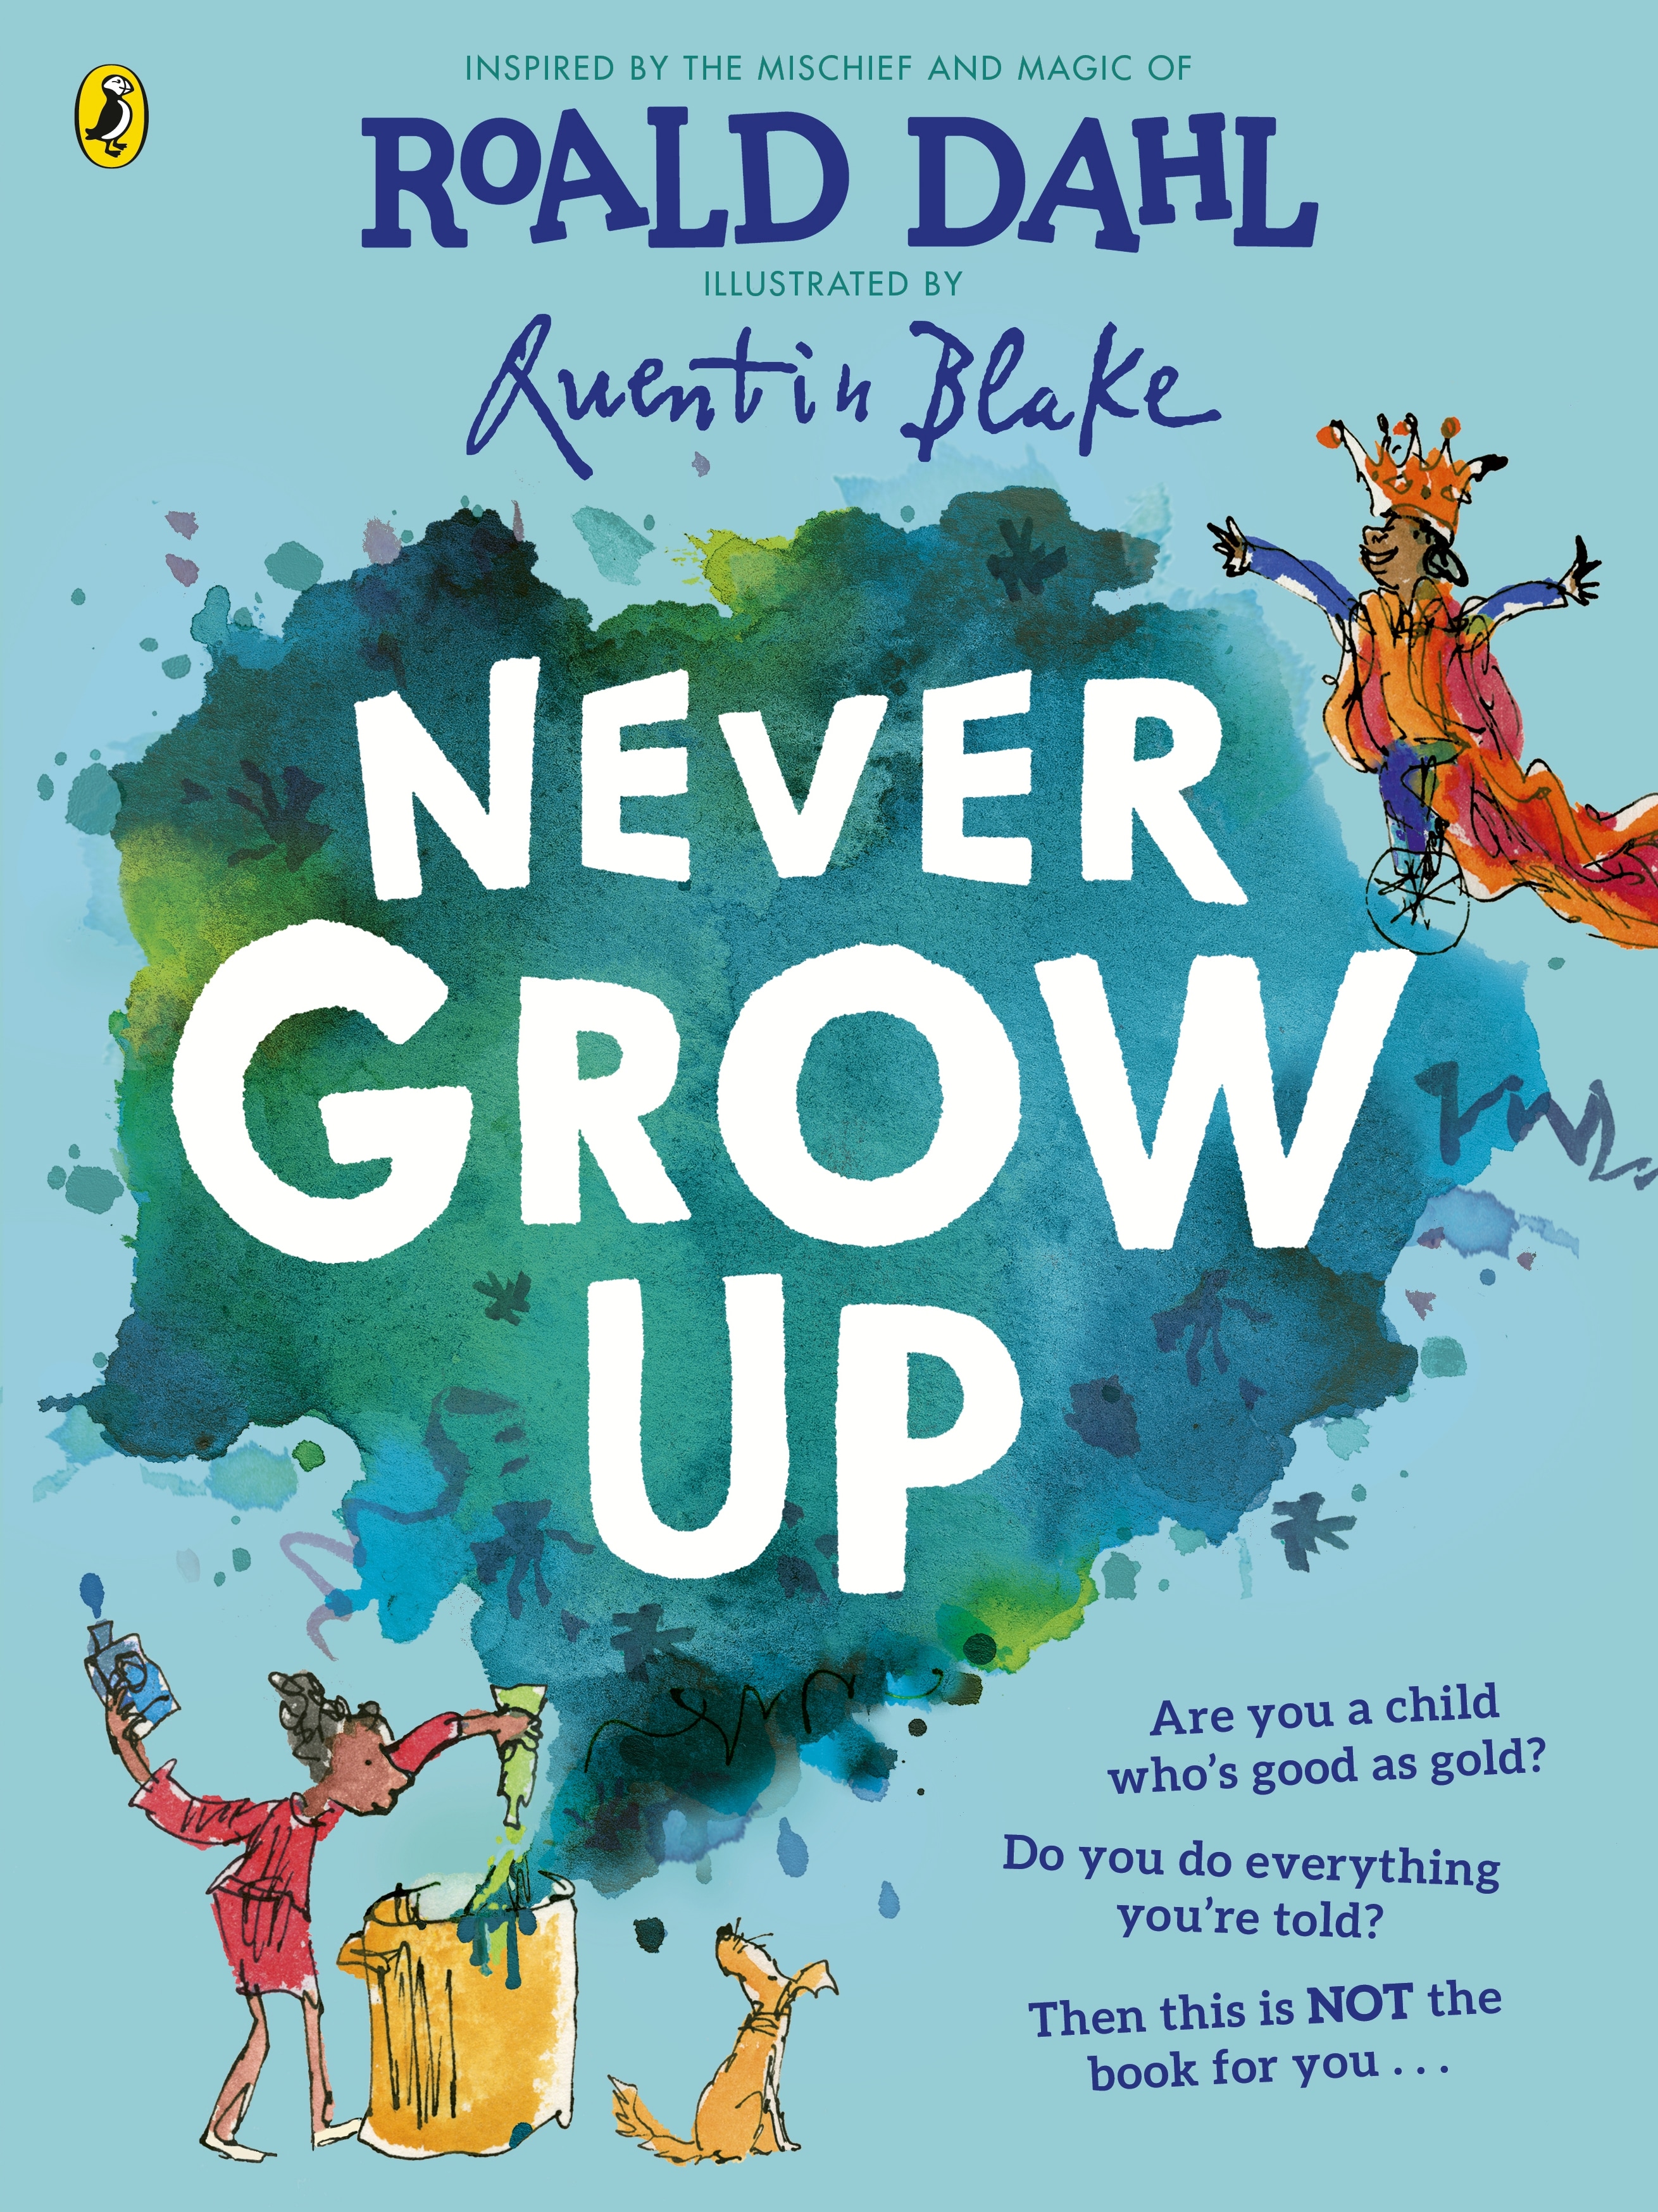 Book “Never Grow Up” by Roald Dahl, Quentin Blake — June 10, 2021